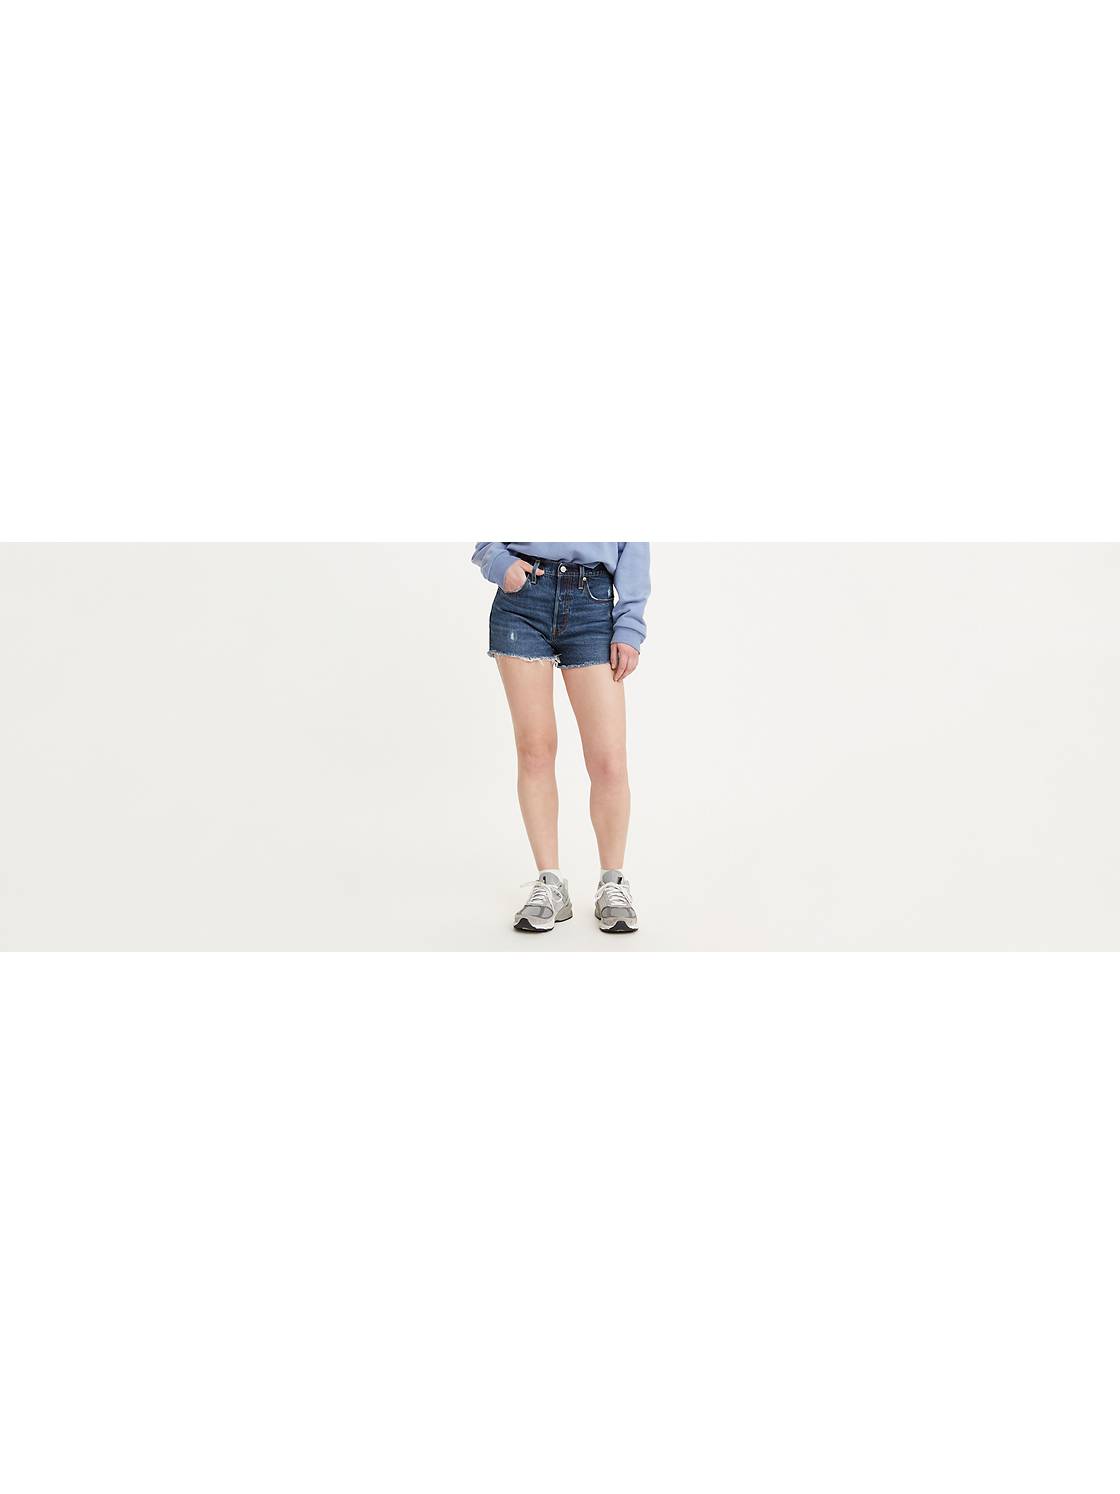 Shorts: Shop Jeans Shorts, Bermuda More | US